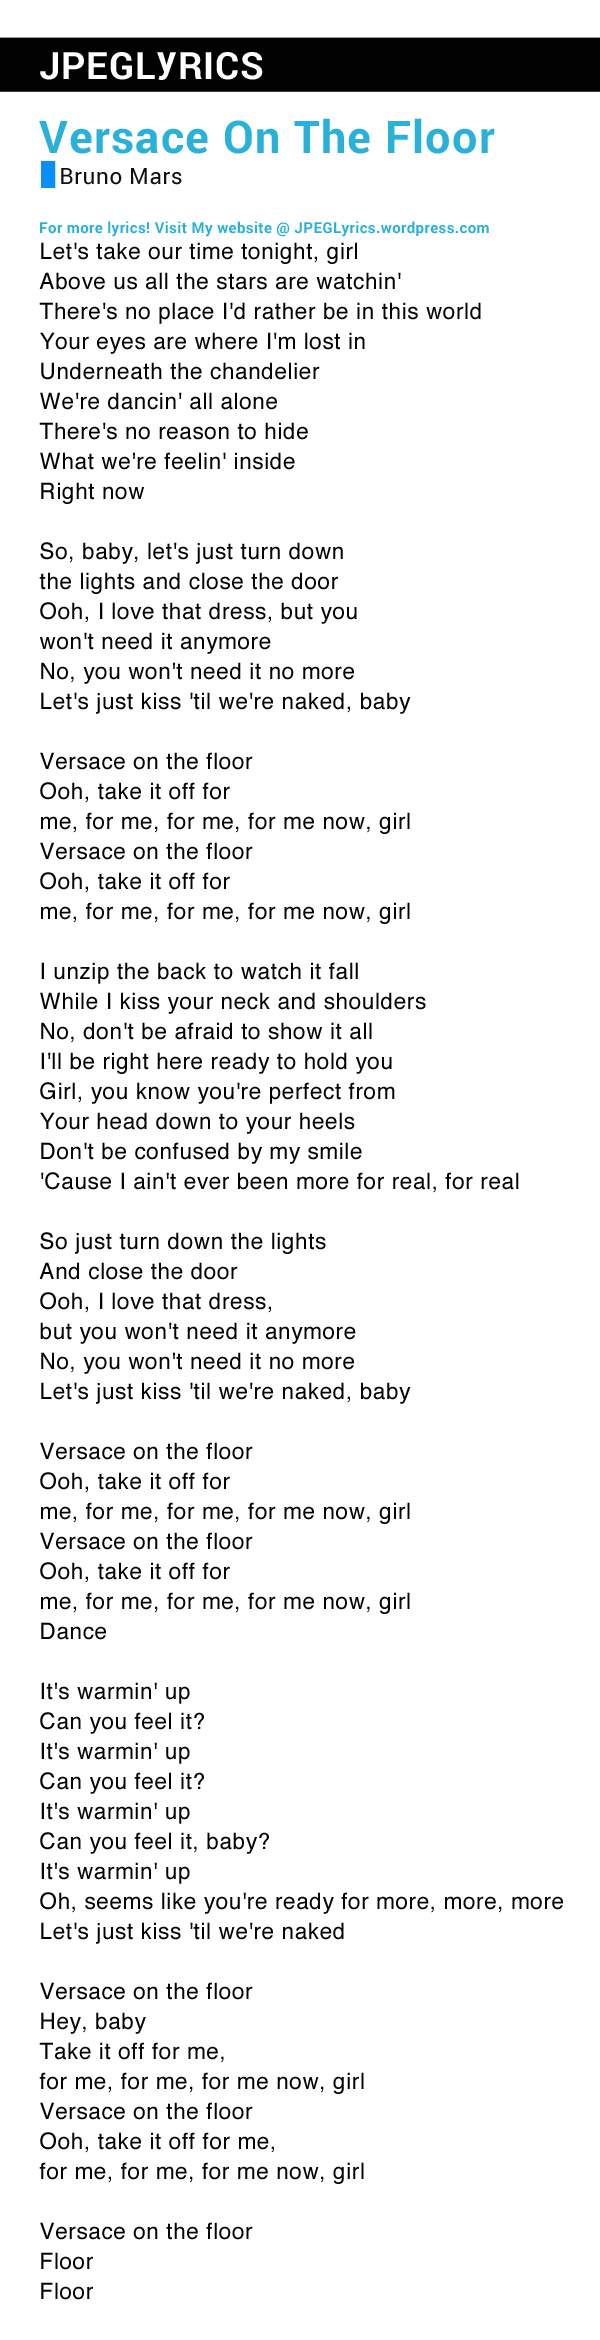 Versace On The Floor By Bruno Mars Lyrics Jpeg Lyrics